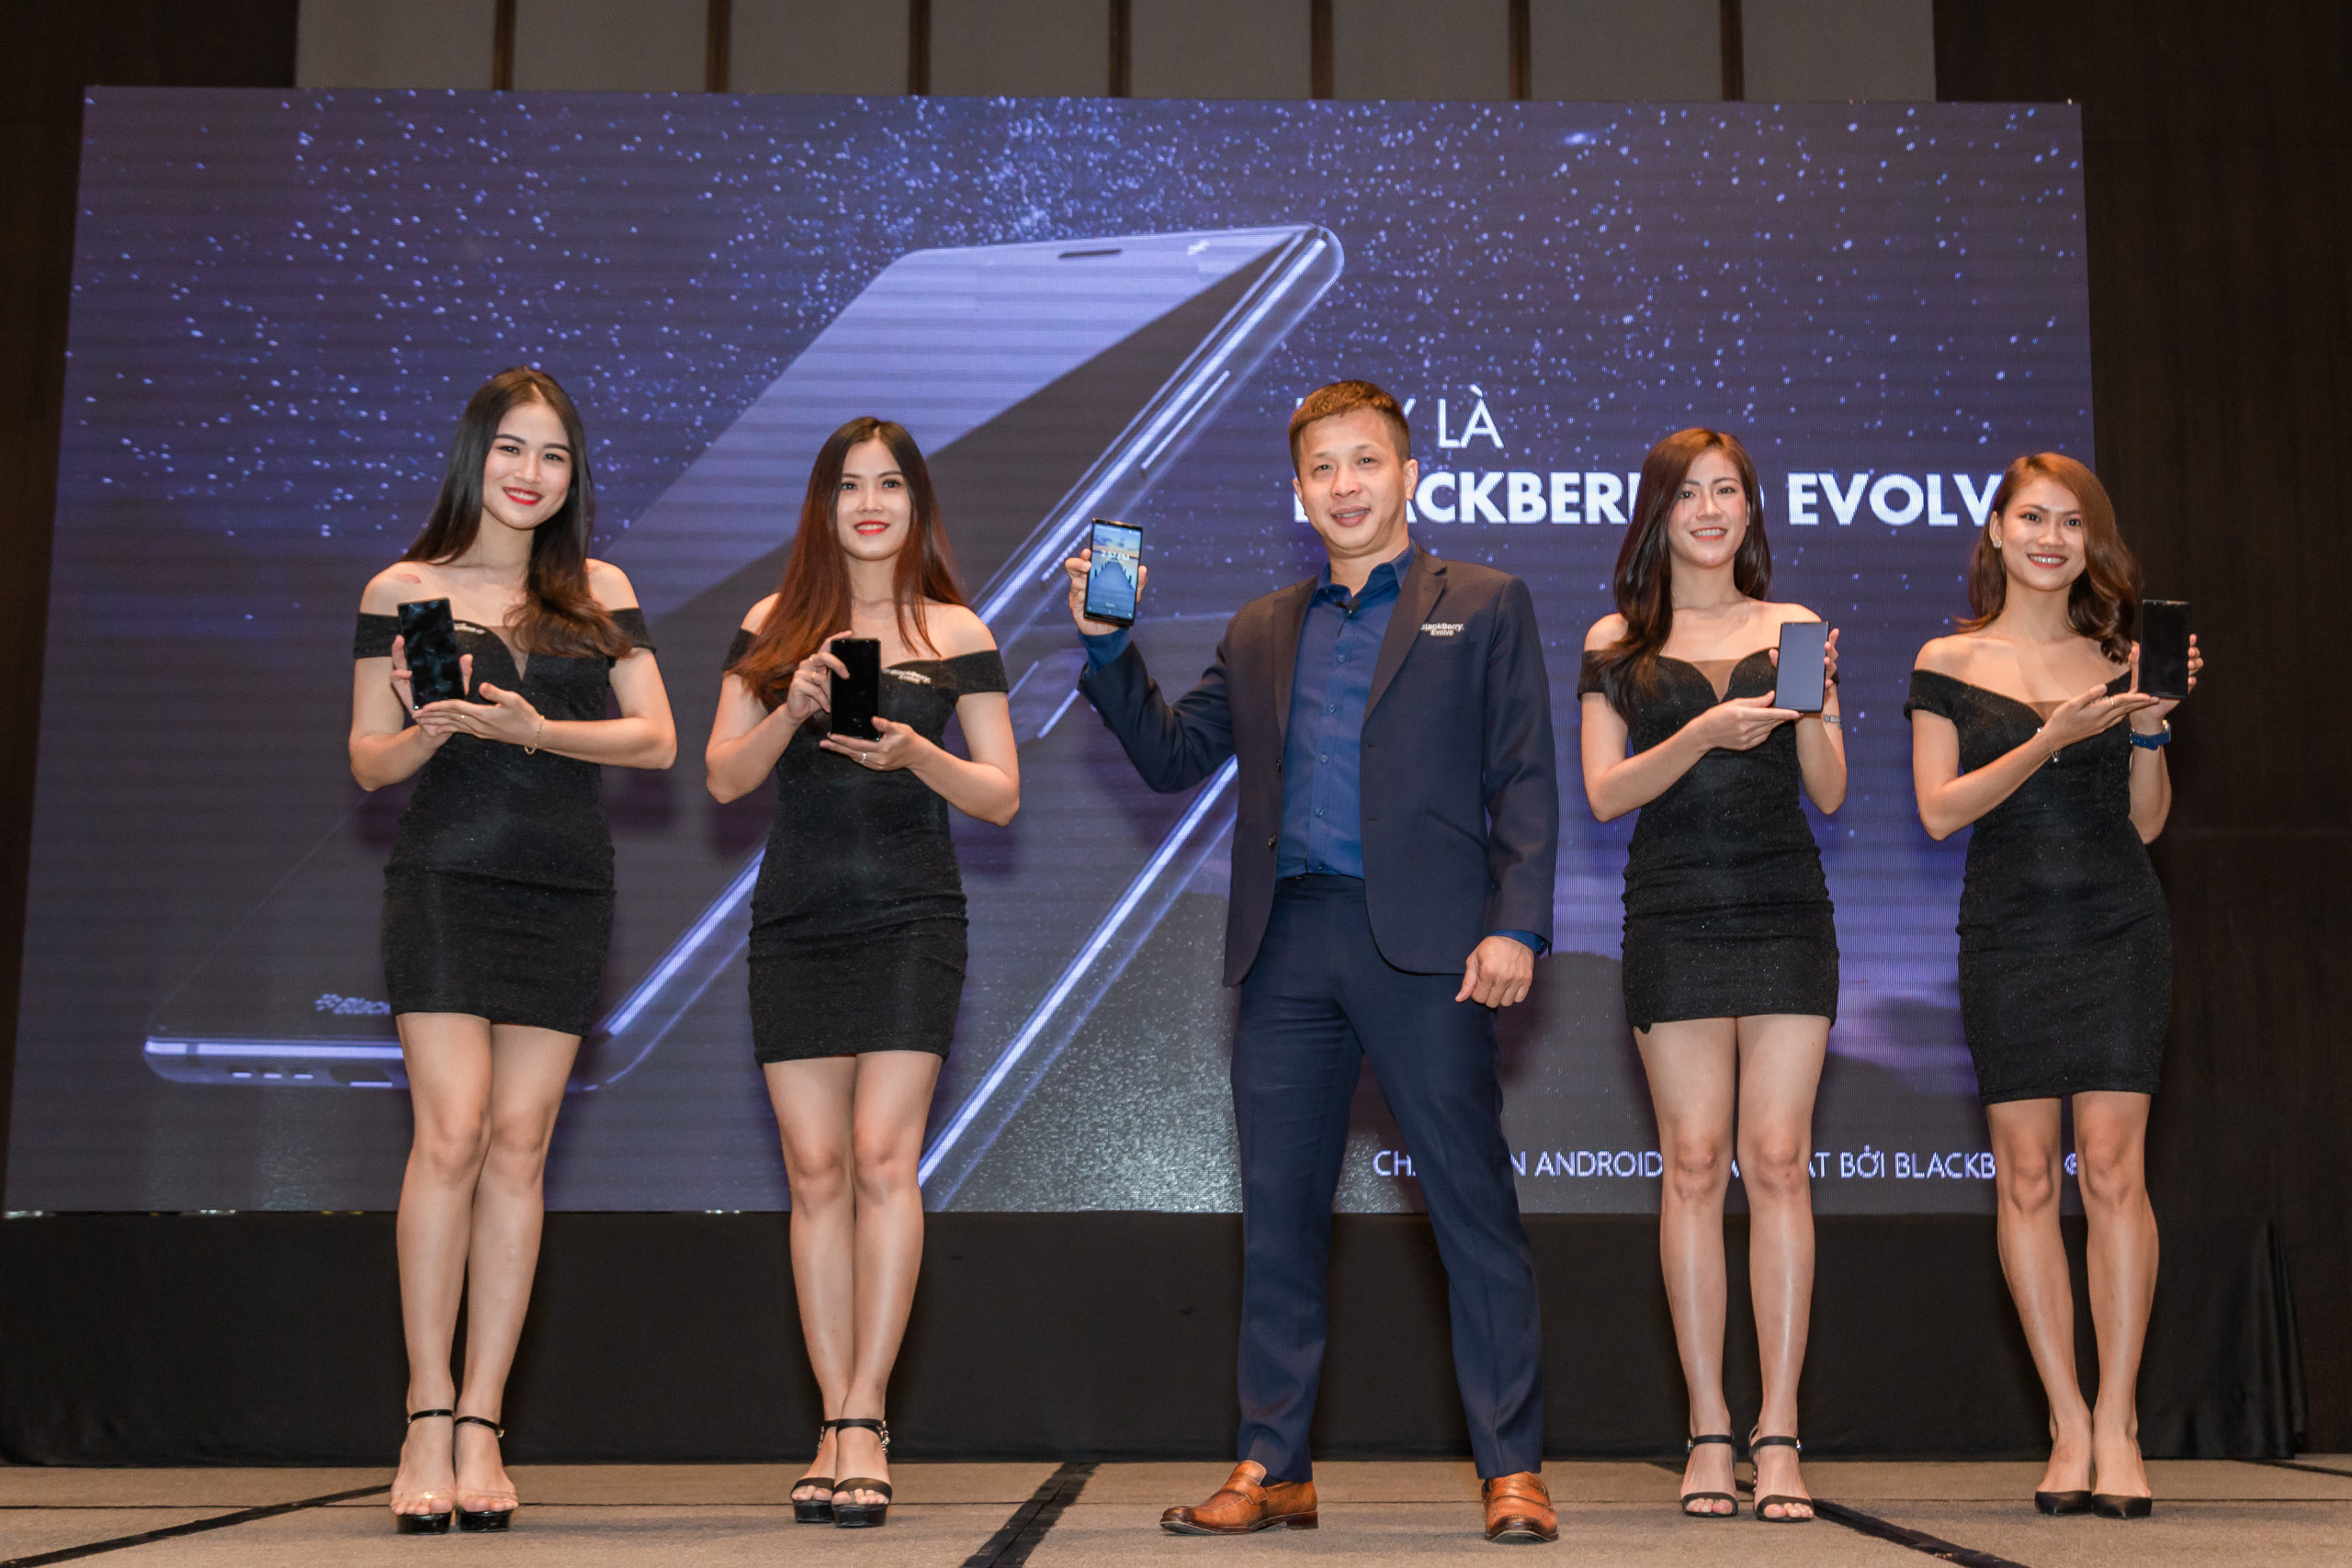 BlackBerry Evolve chính thức trình làng tại Việt Nam:
Smartphone full cảm ứng, siêu bảo mật, giá 8 triệu